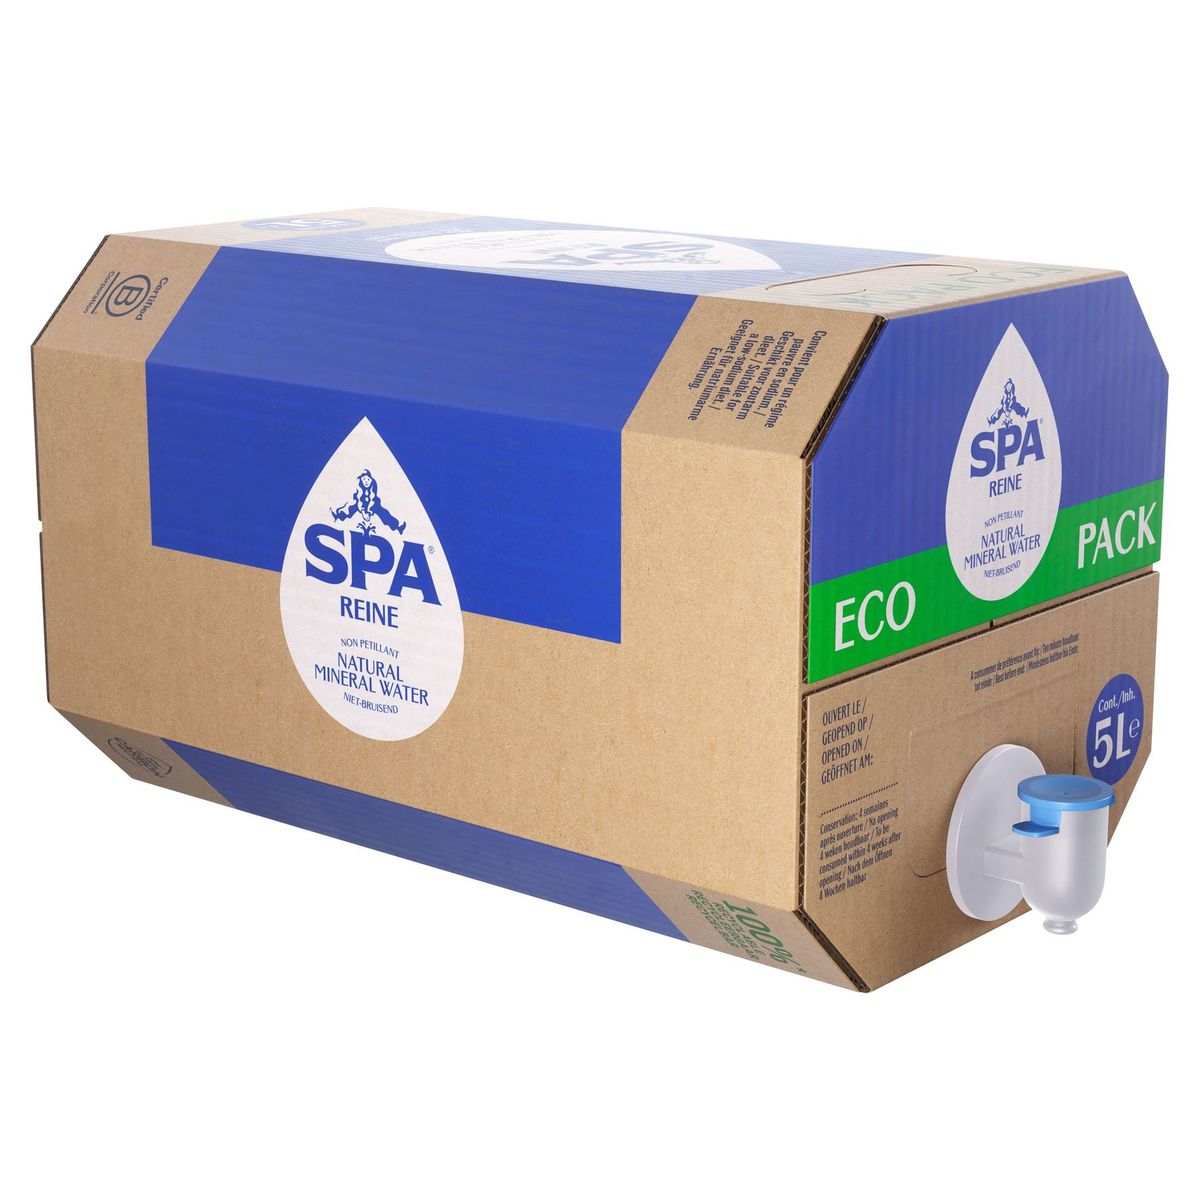 SPA REINE Natuurlijk Mineraalwater Eco Pack 5L